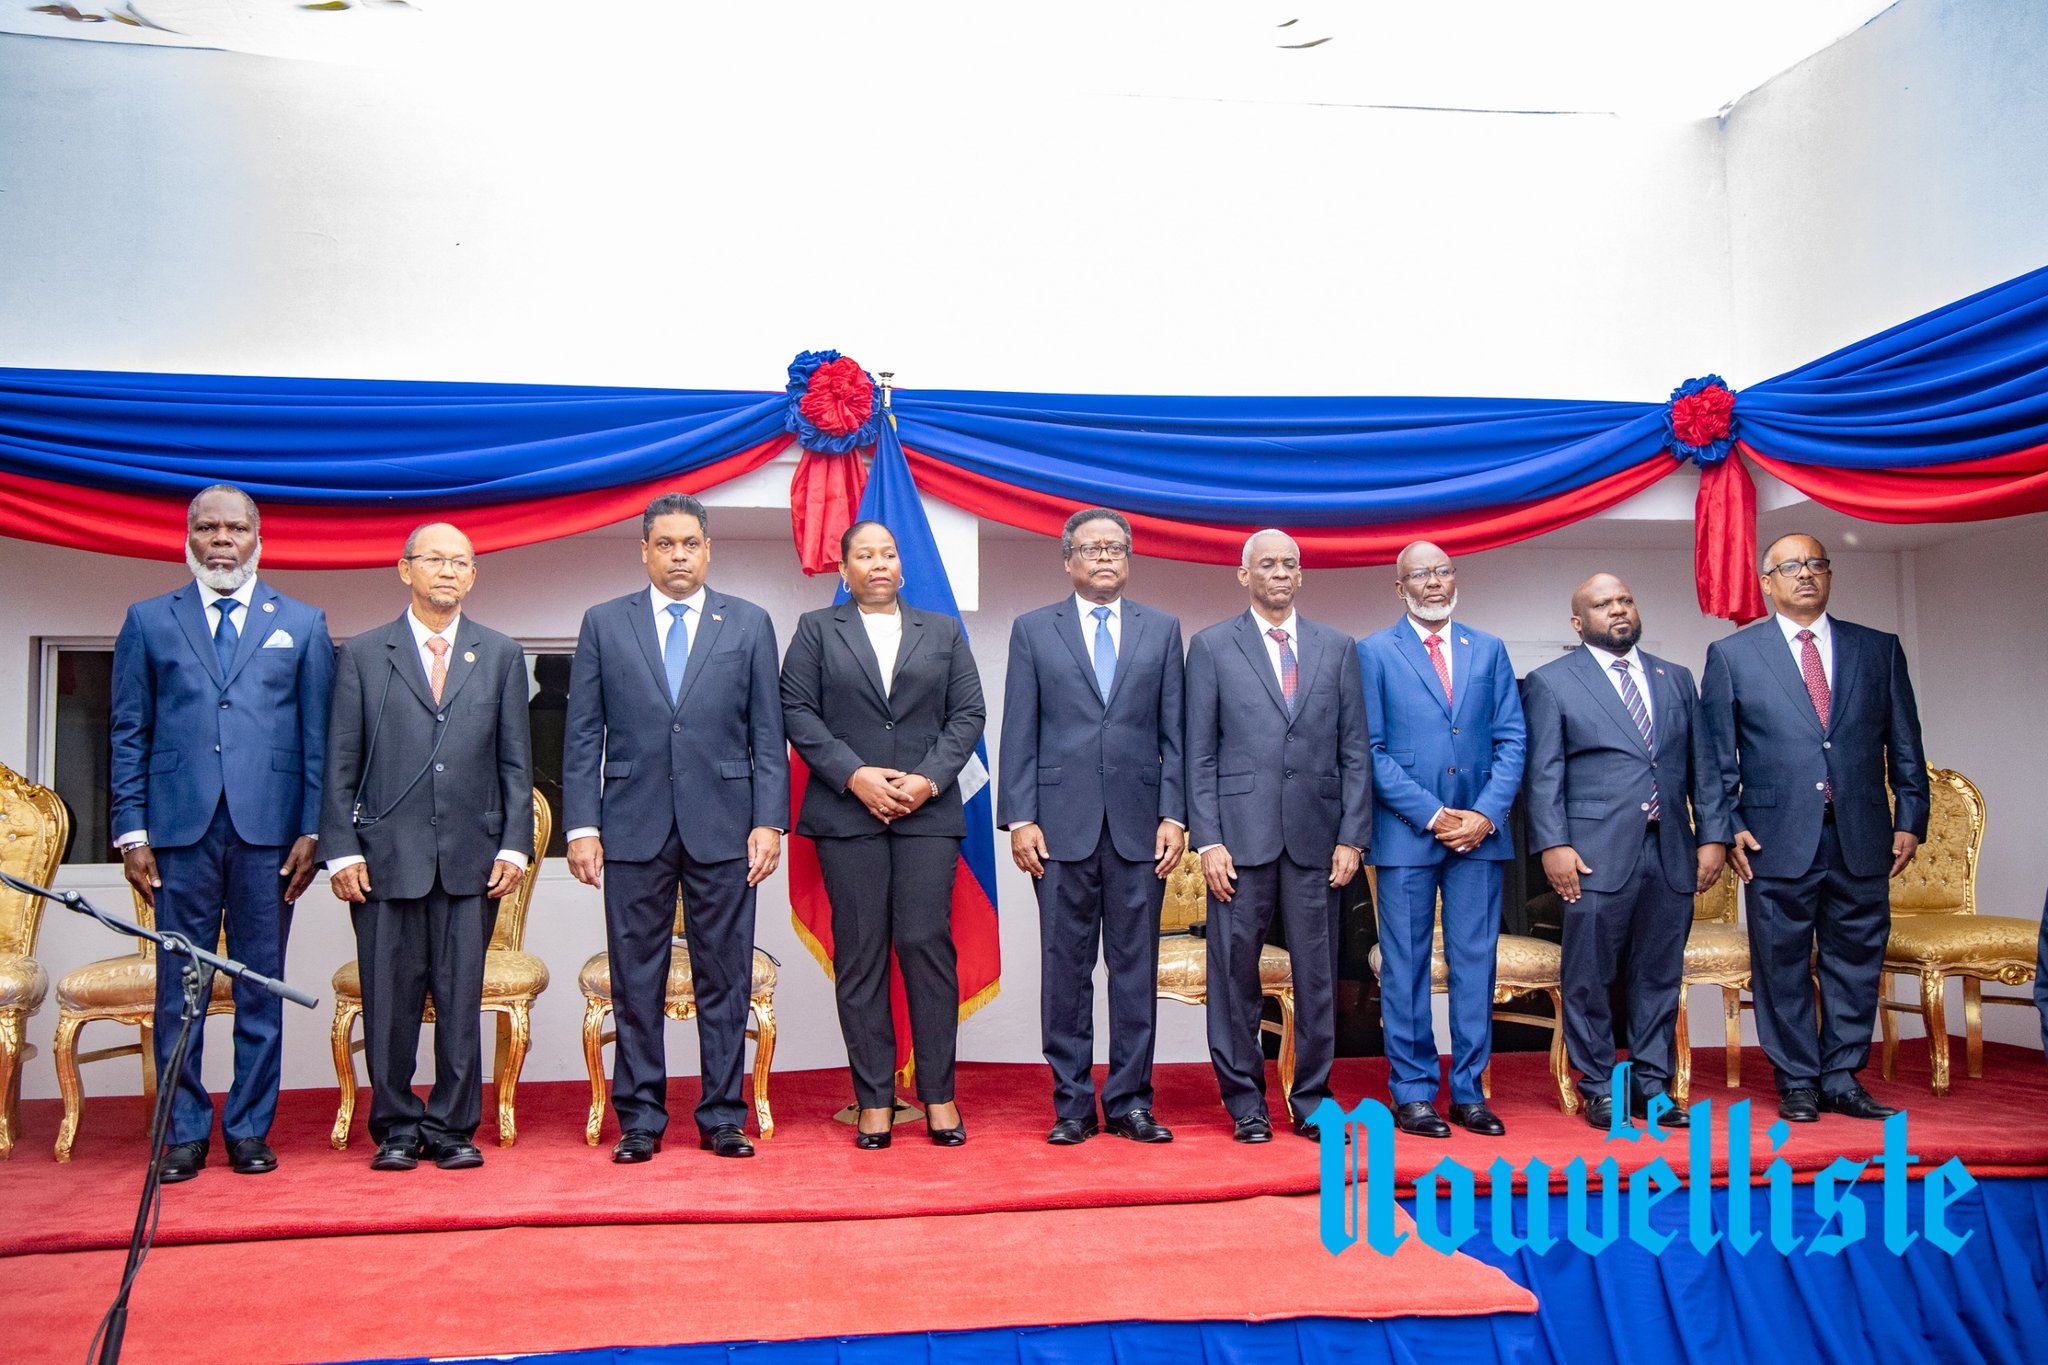 Les 9 membres du Conseil présidentiel Photo : Le Nouvelliste